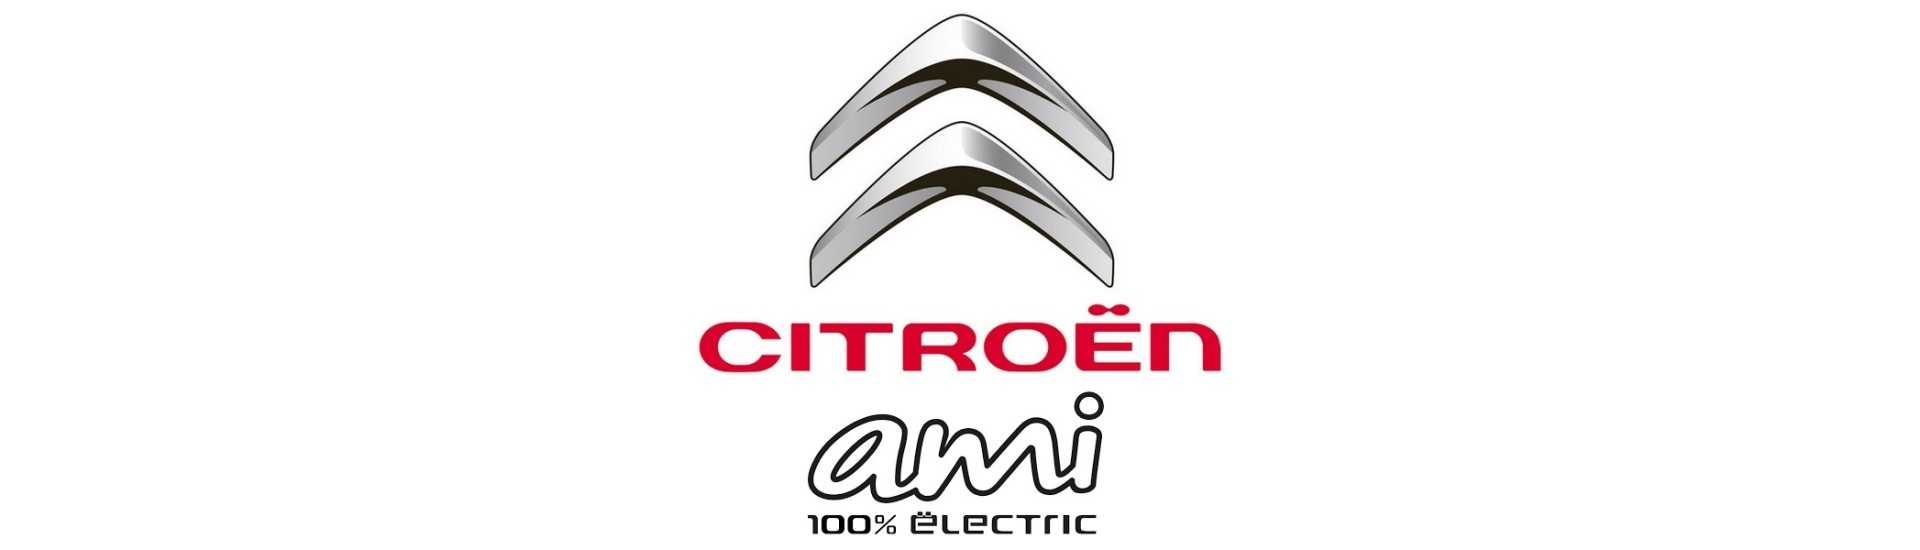 Porta esterna maniglia miglior prezzo auto senza permesso Citroën